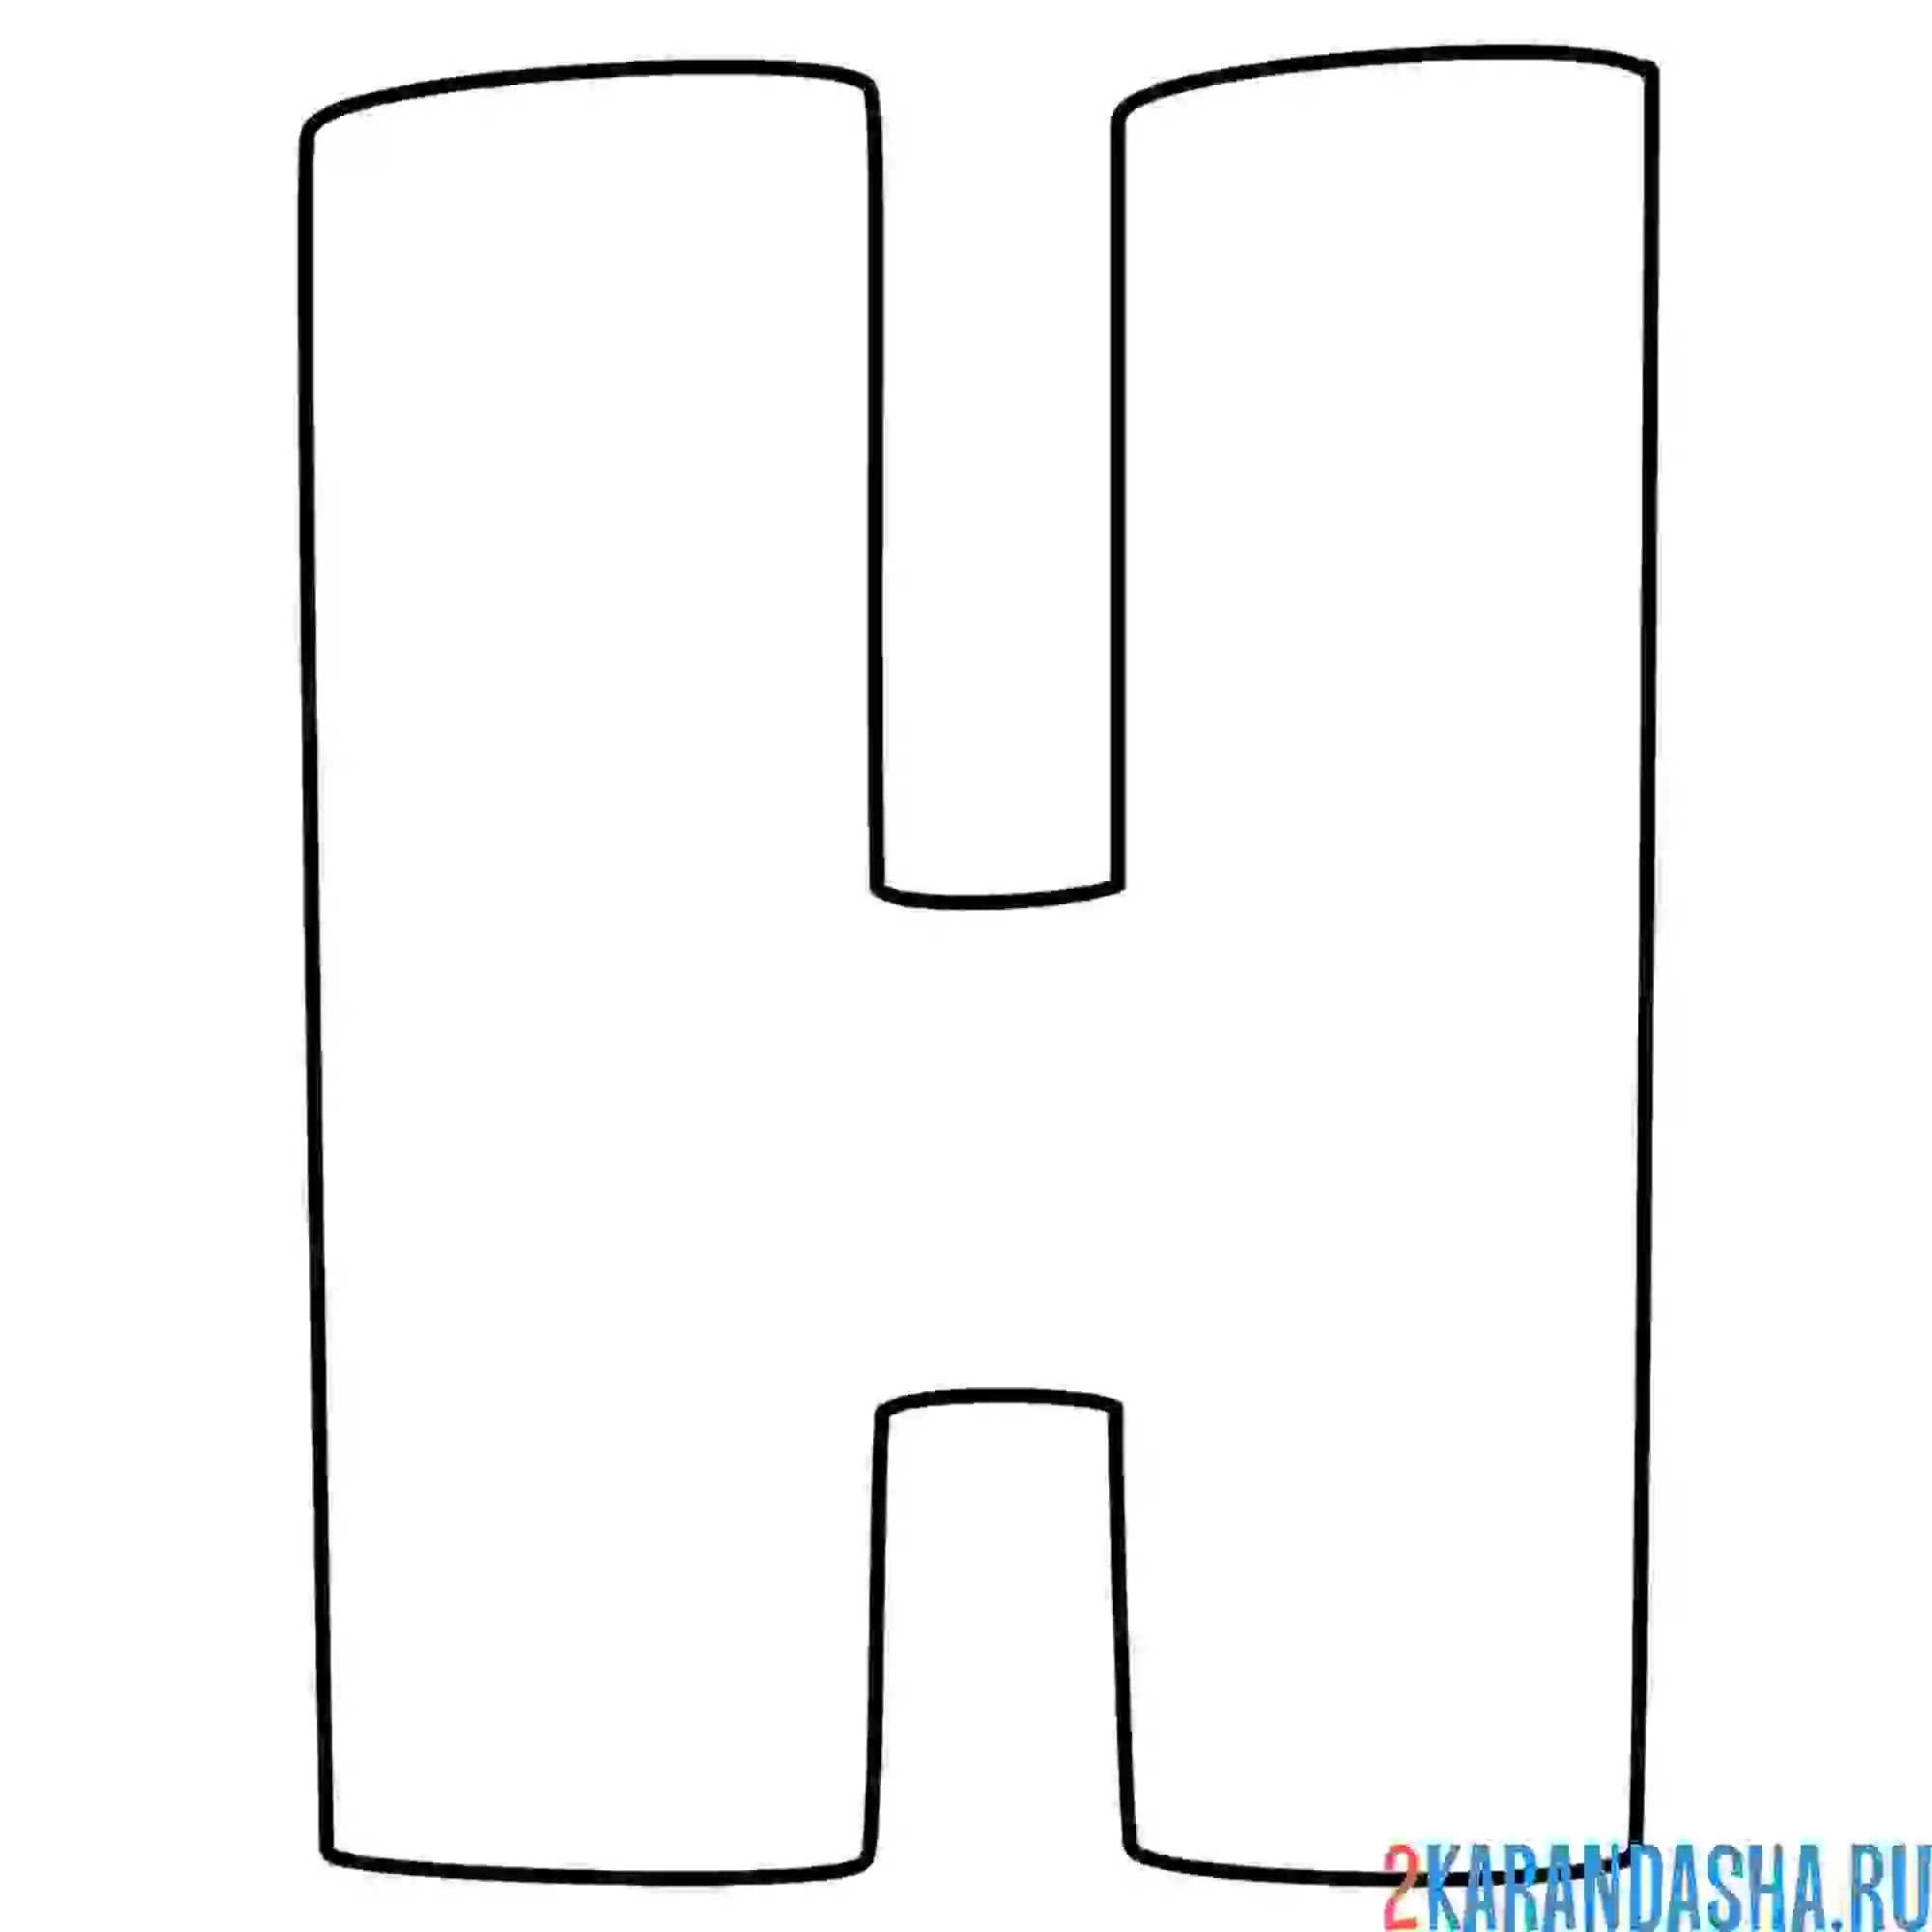 Раскраска английский алфавит буква h без картинки